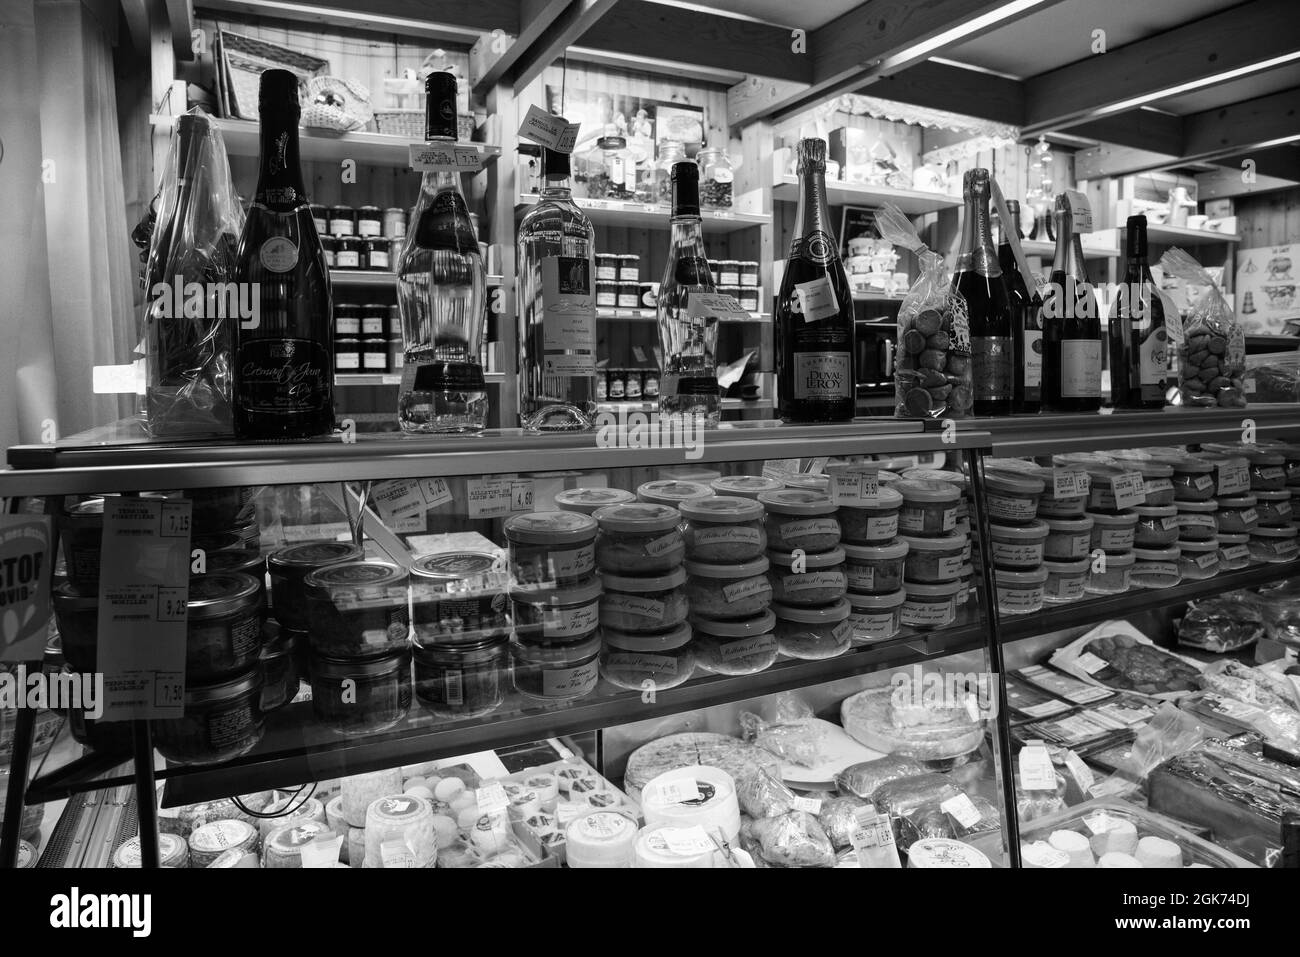 Jura, Frankreich - 30. Dezember 2020: Einrichtung von Lebensmittelspezialitäten. Lokale leckere Würstchen und Schinken, Gourmet Fois Gras, Wein, Süßigkeiten und berühmte Comte Stockfoto